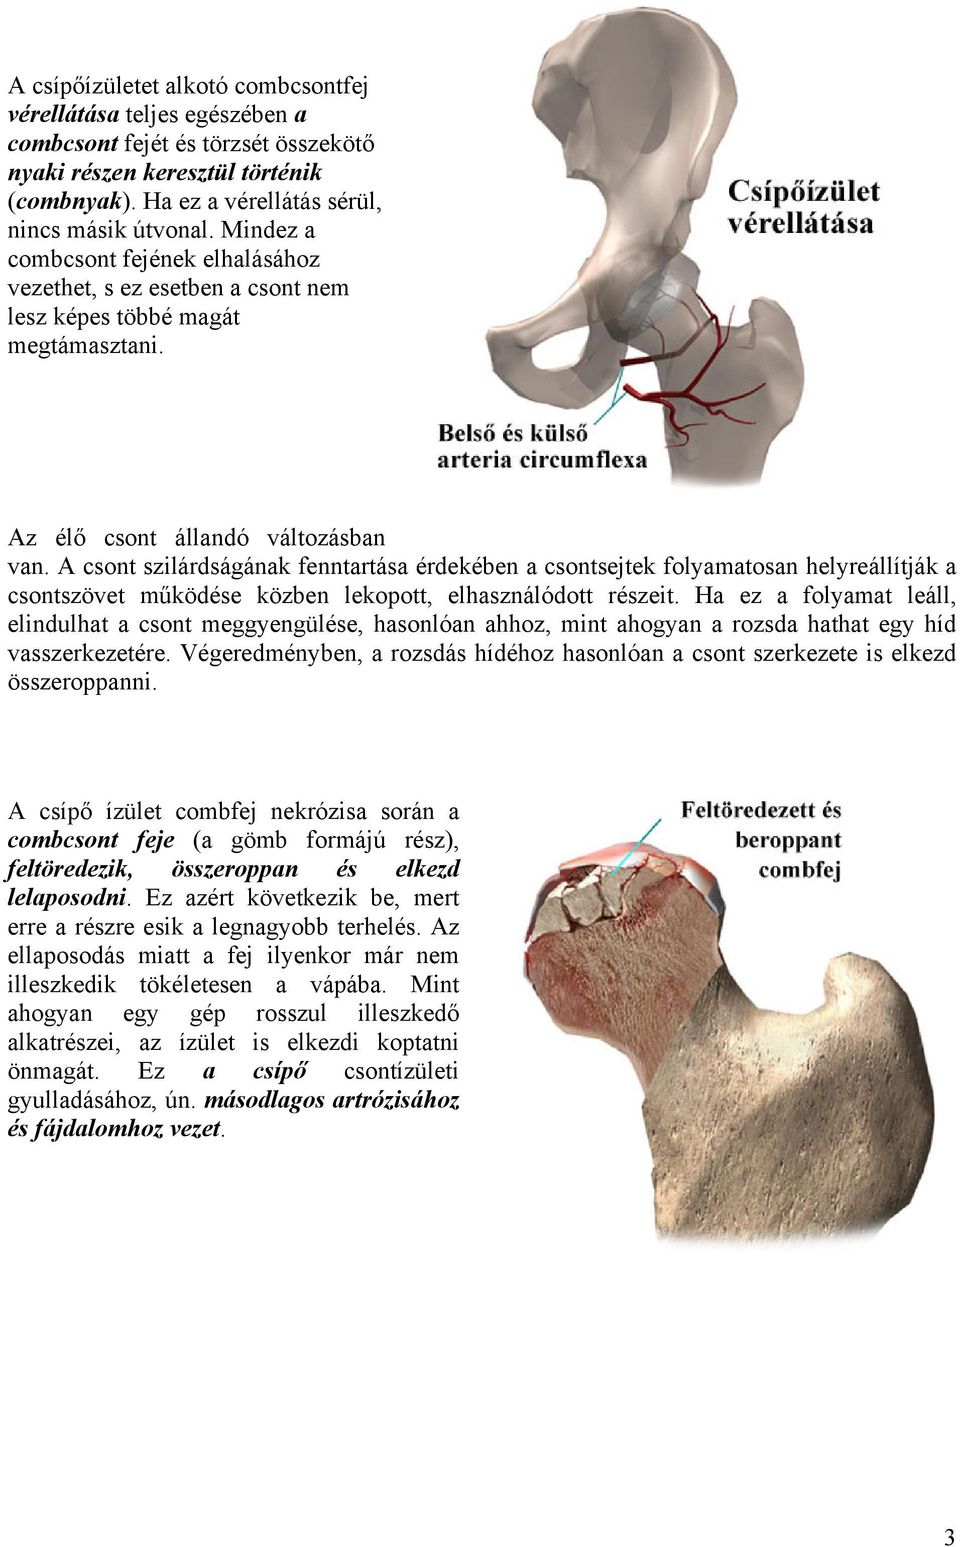 futópad a csípőízület artrózisához